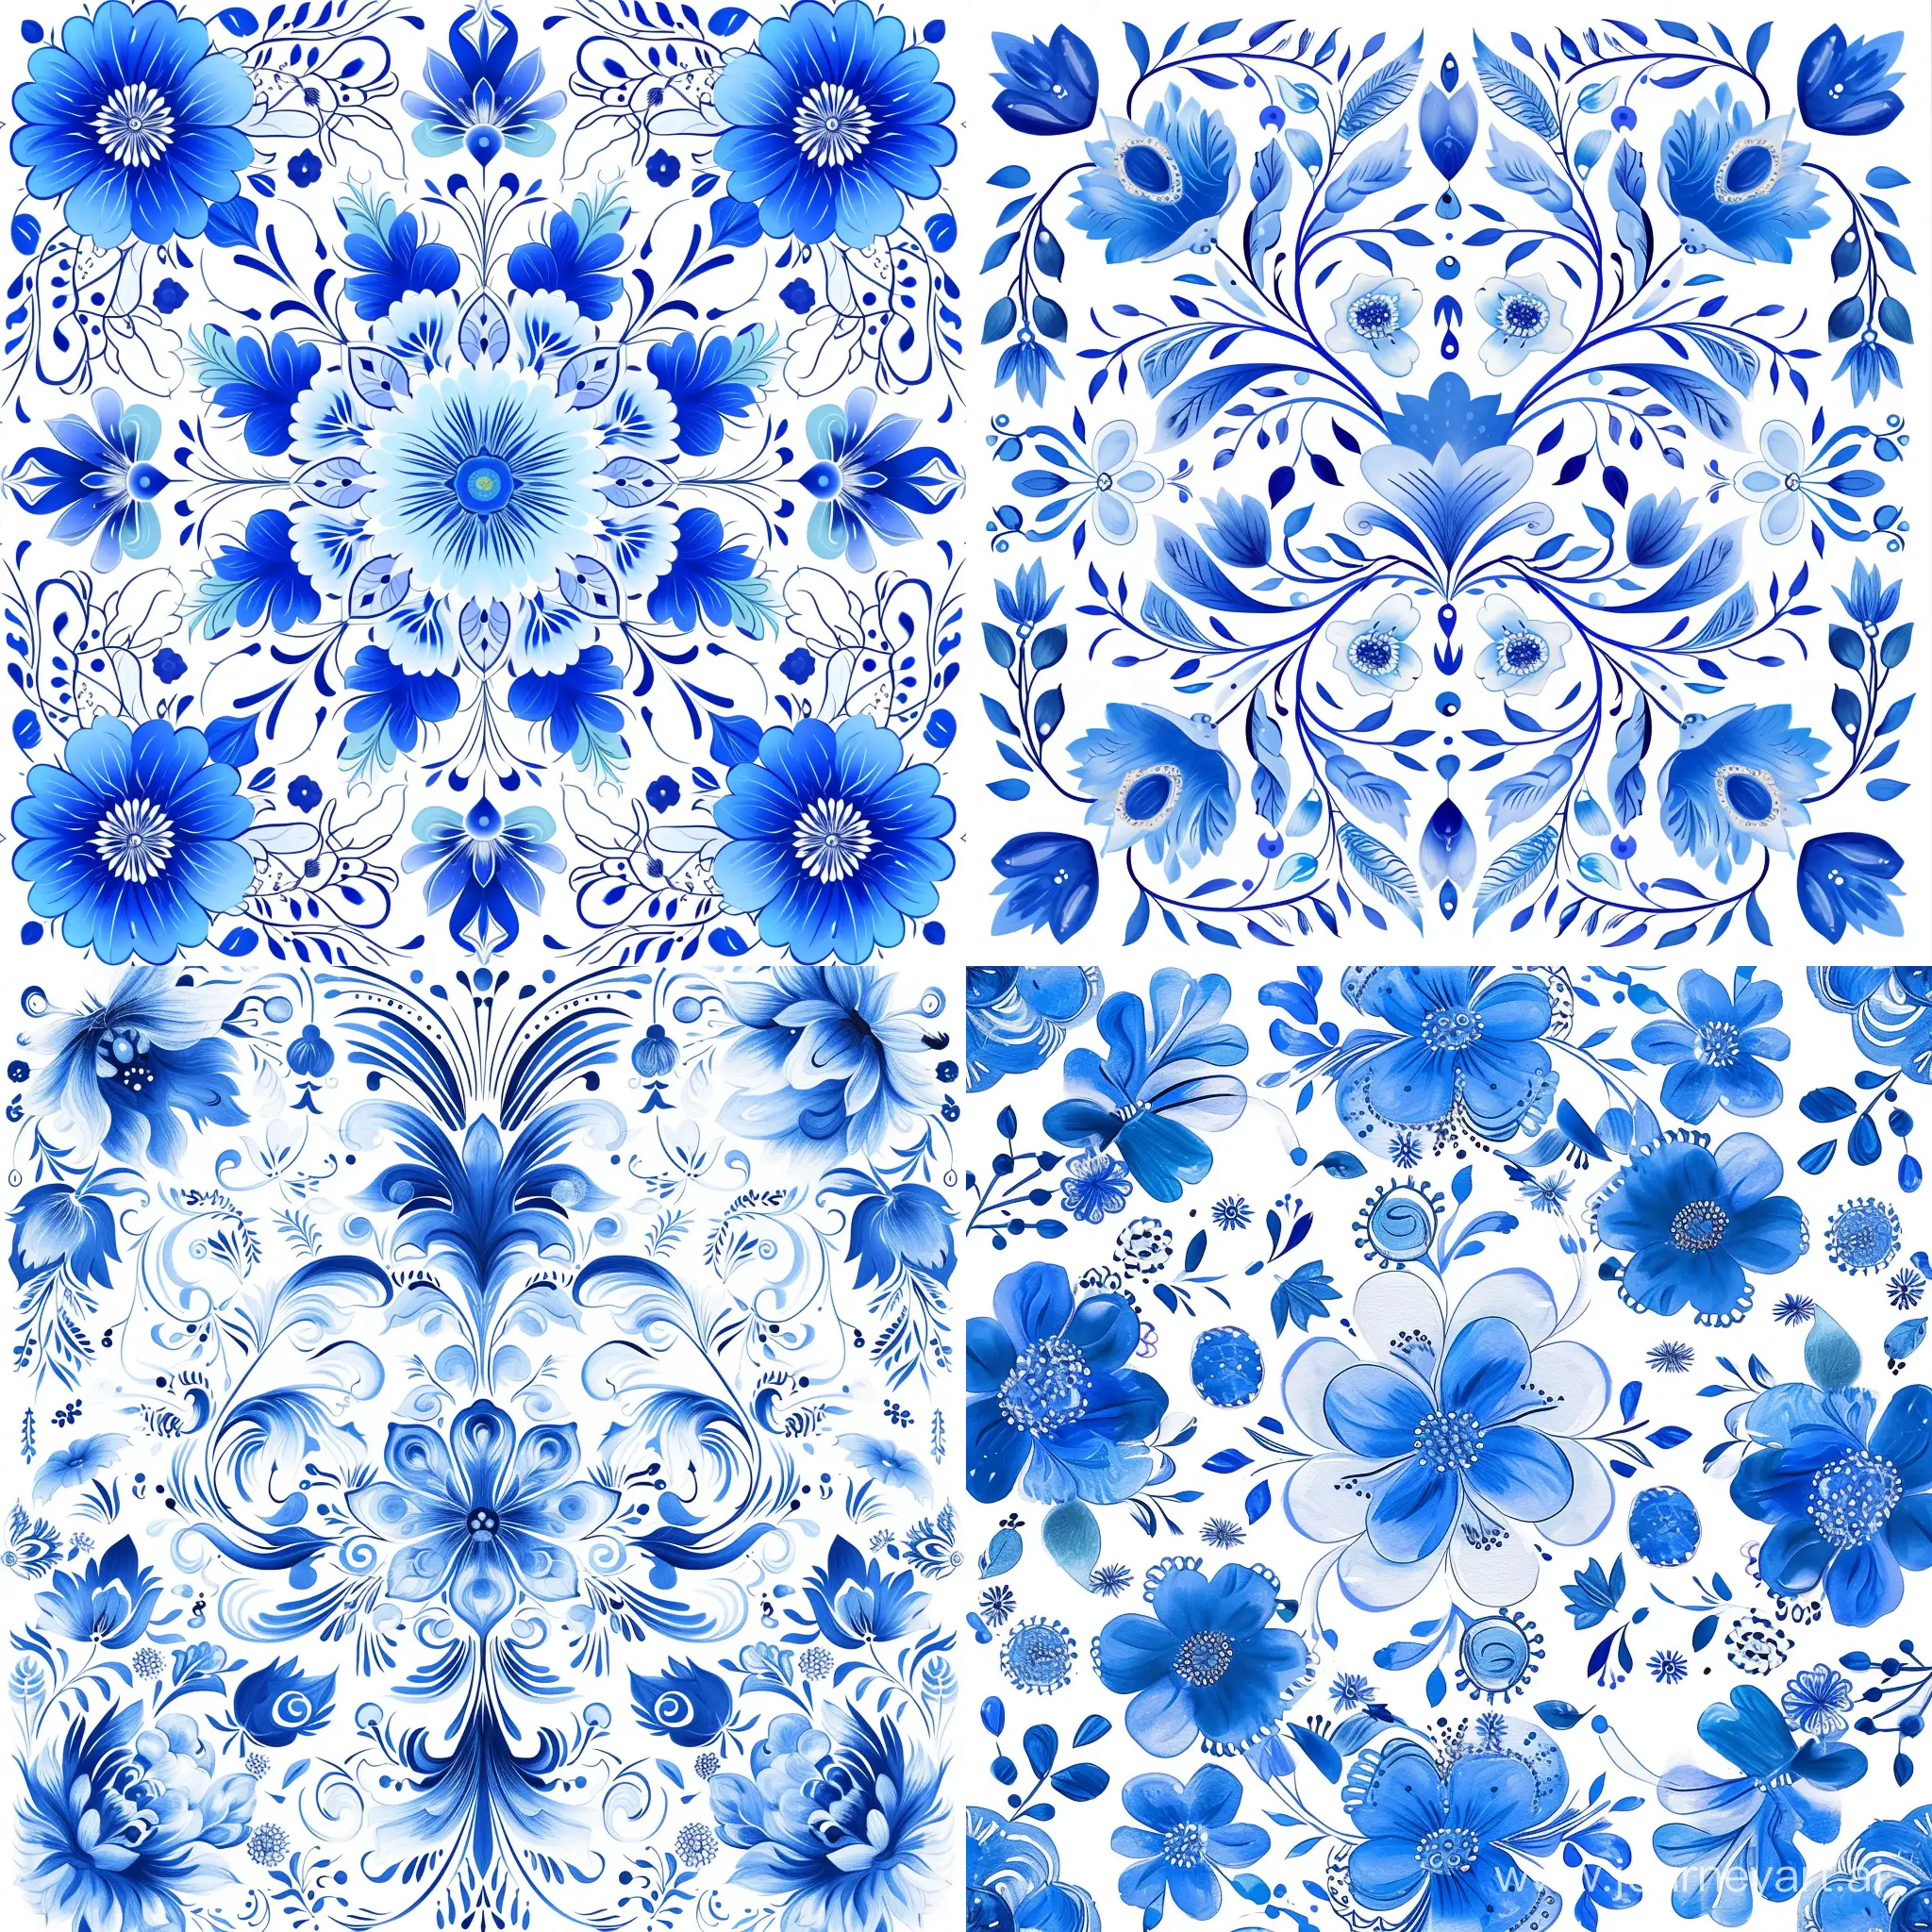 узор сочетание  русского стиля "гжель" и психоделических кислотных красок. 
цвета используй белый, синий, голубой 